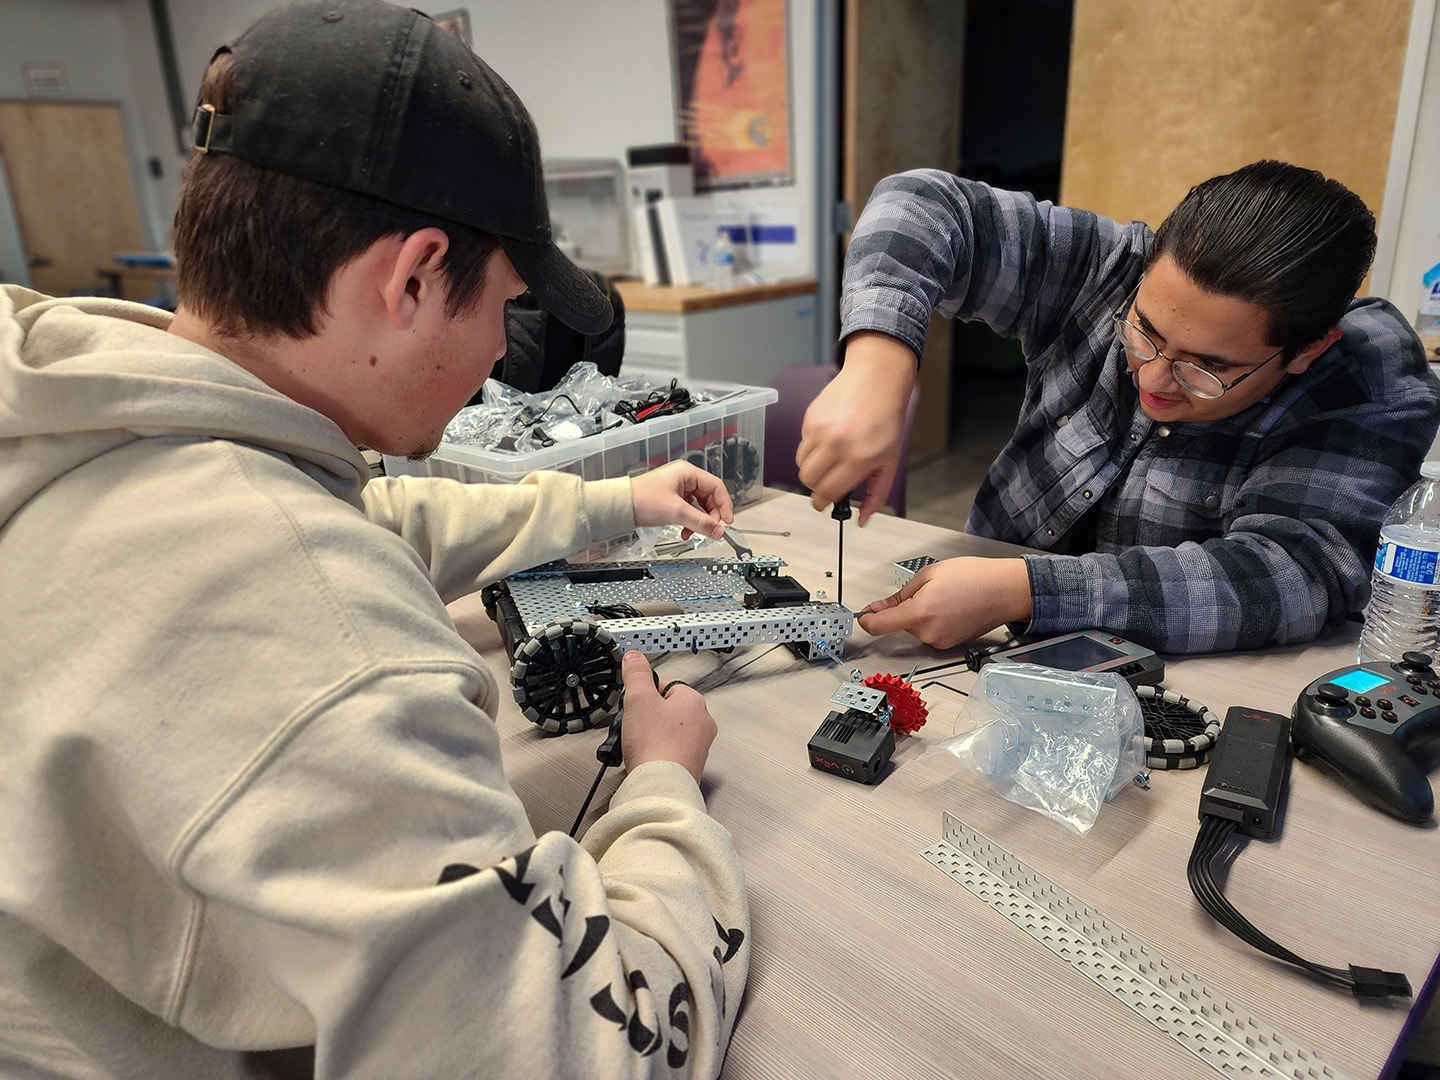 Students working on robotic vehicle